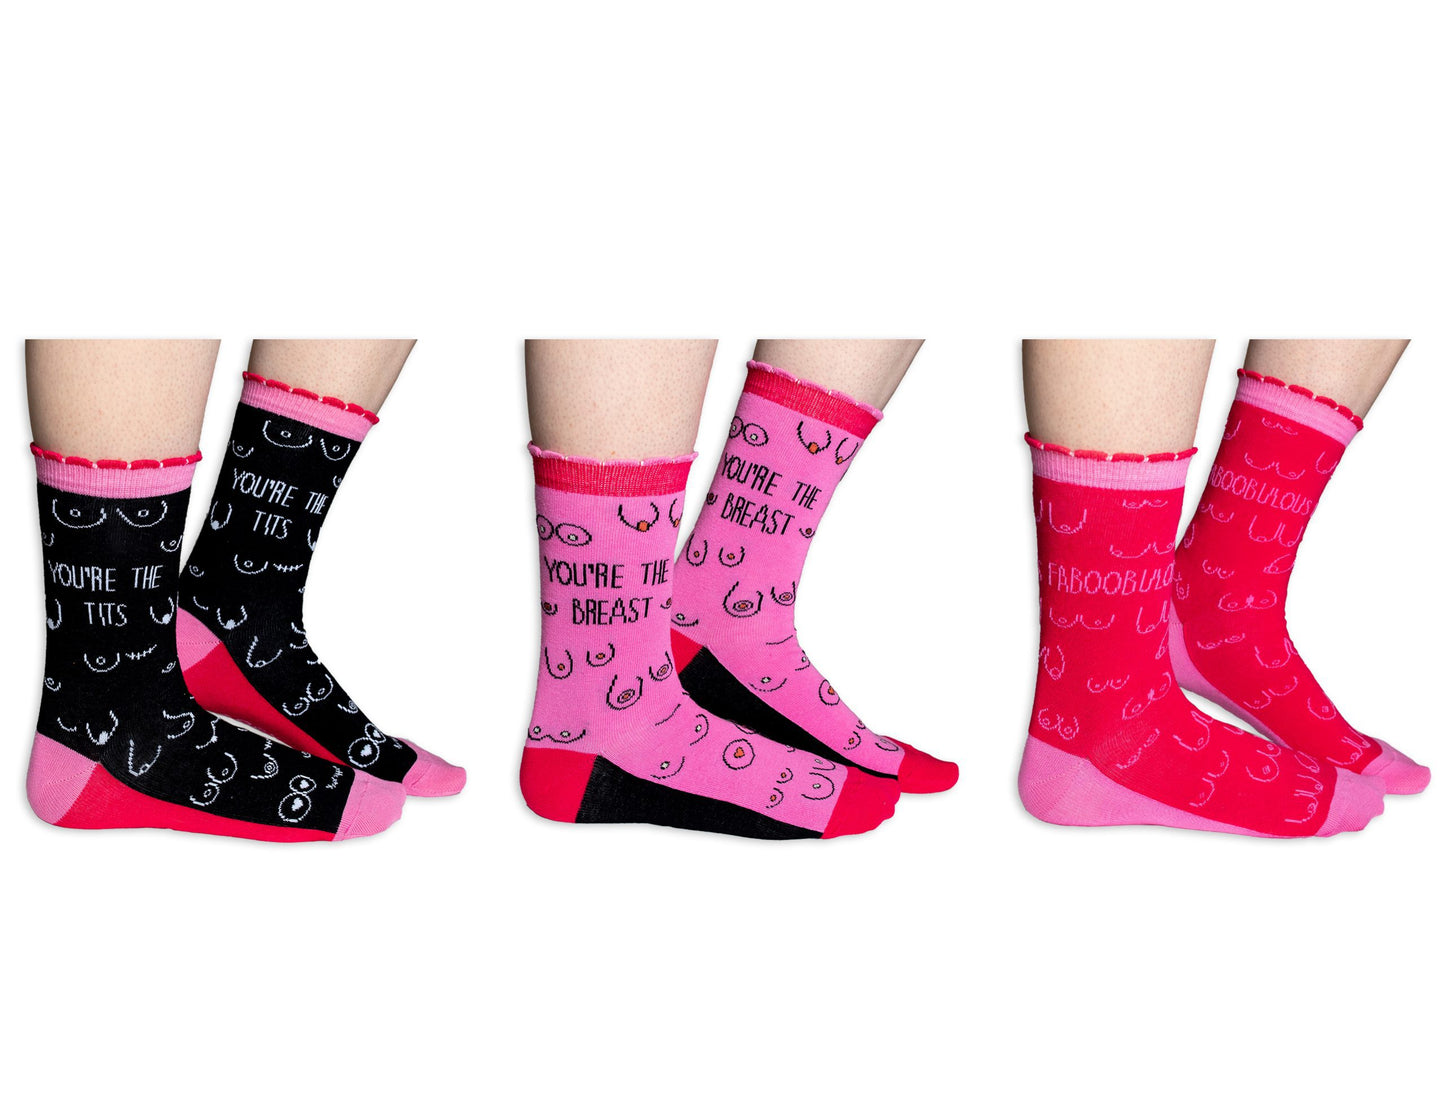 United Odd Socks - YOU’RE FABOOBULOUS Socks Gift Boxed